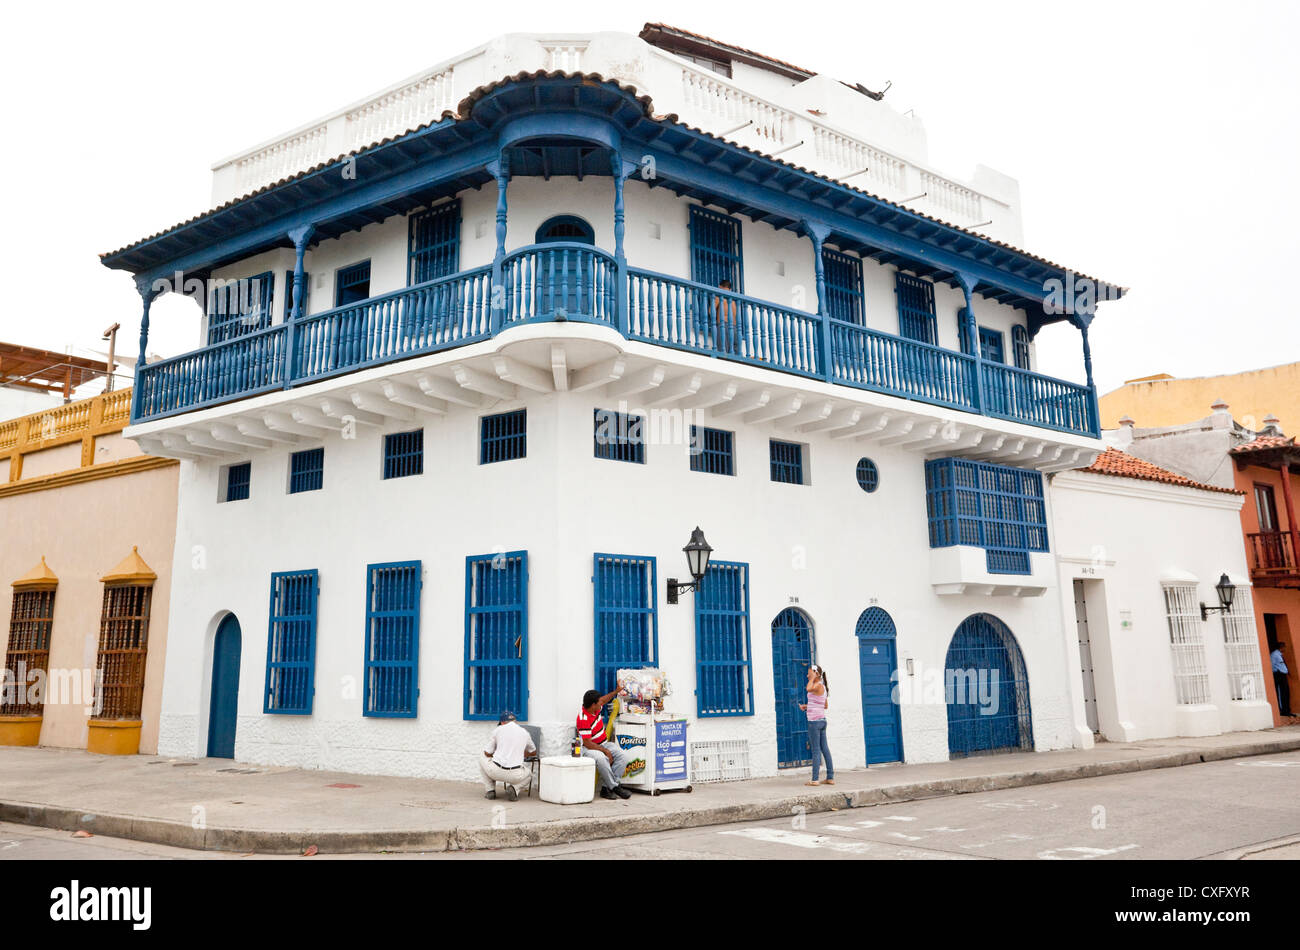 Immeuble d'angle colonial espagnol, Cartagena de Indias, Colombie. Banque D'Images